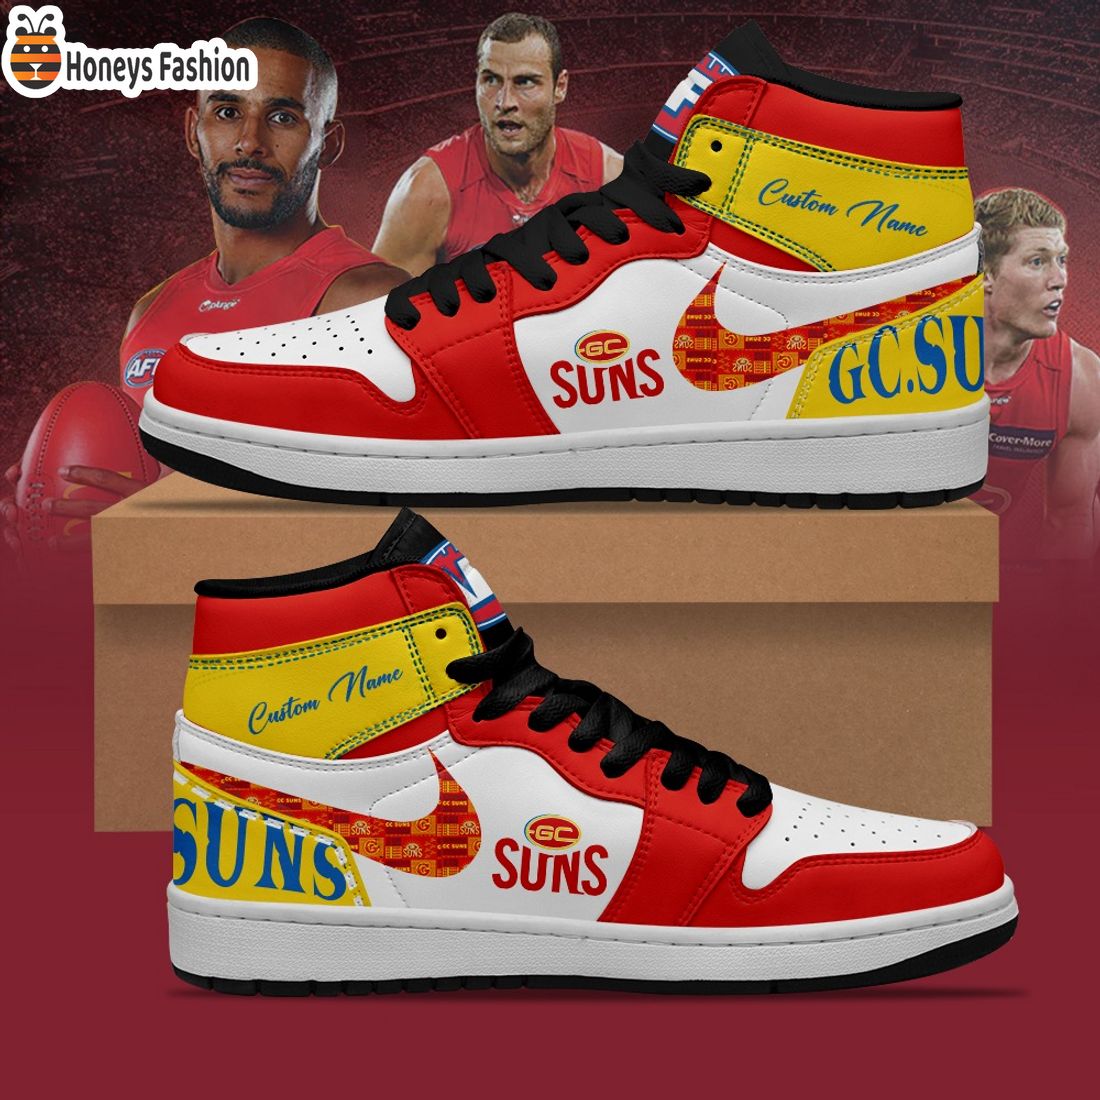 Gold Coast Suns Football Club Custom Name Air Jordan 1 Sneaker